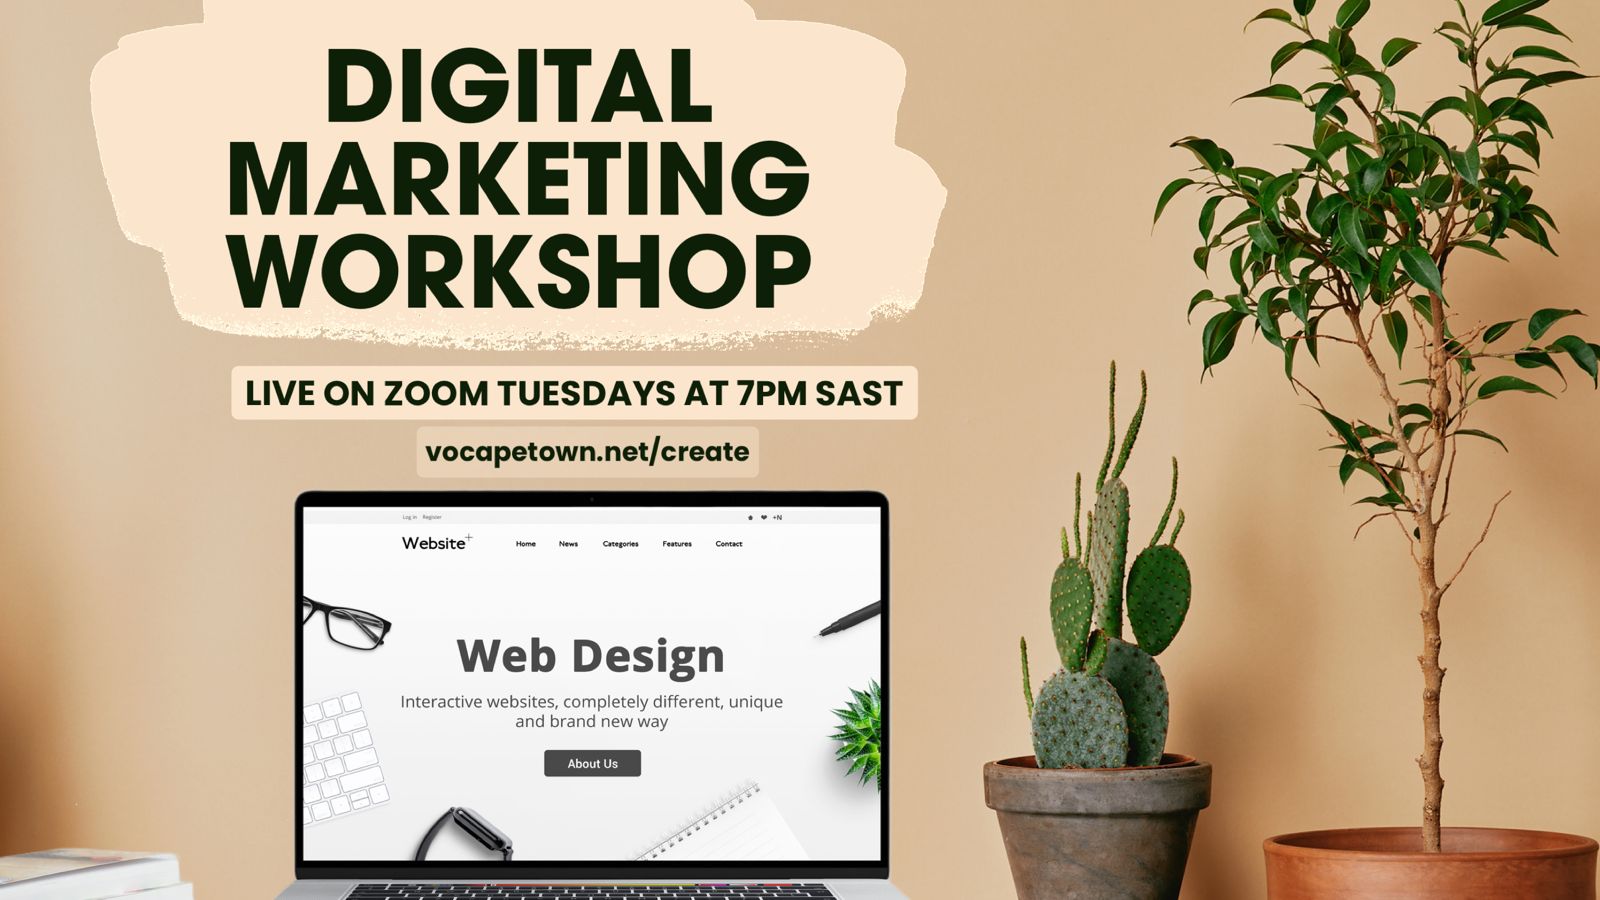 Live Zoom Digital Marketing Workshop